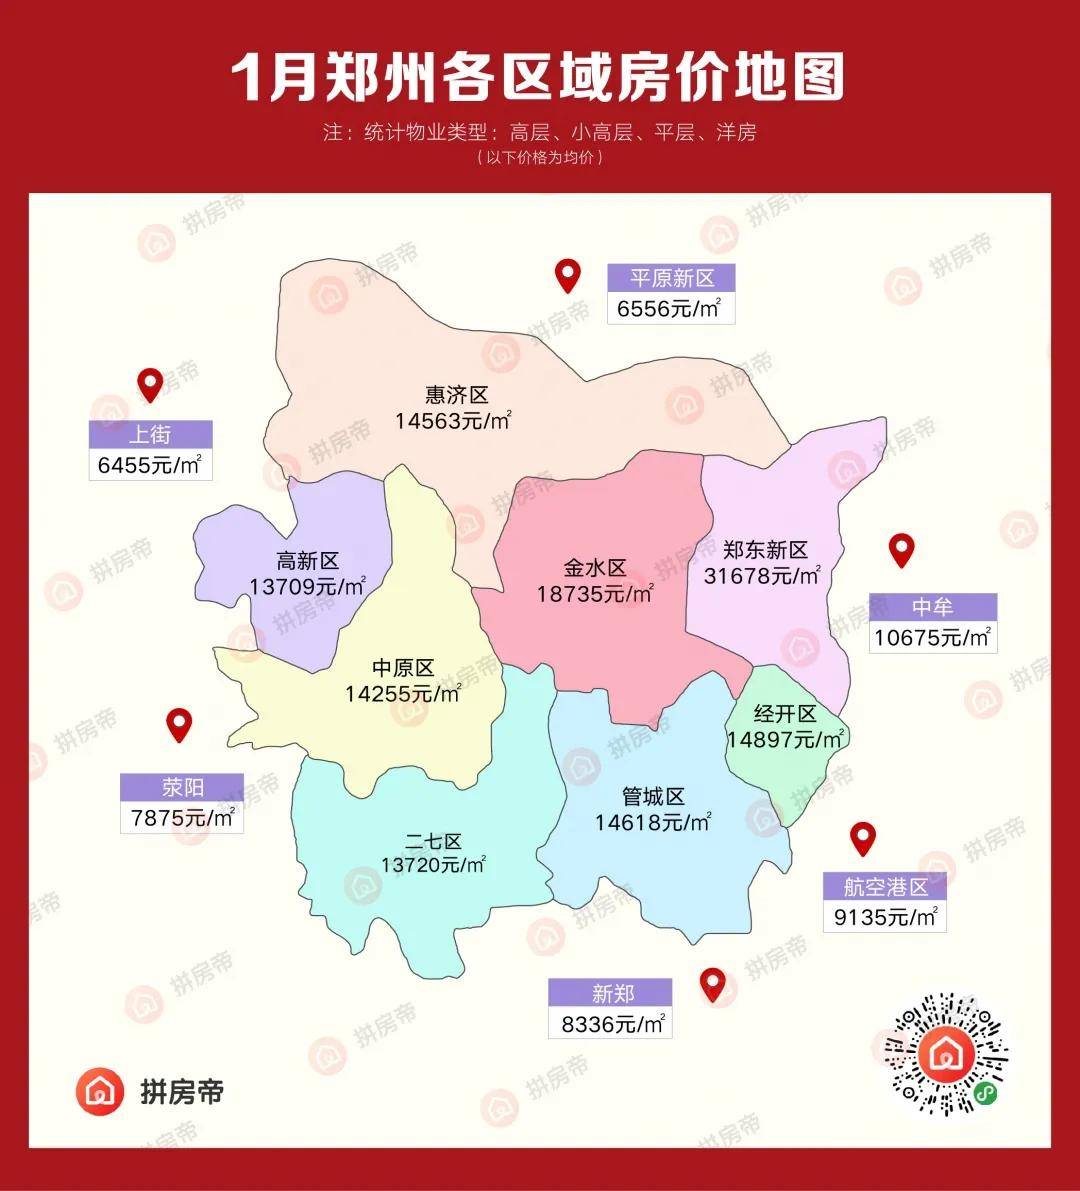 郑州地区划分图图片